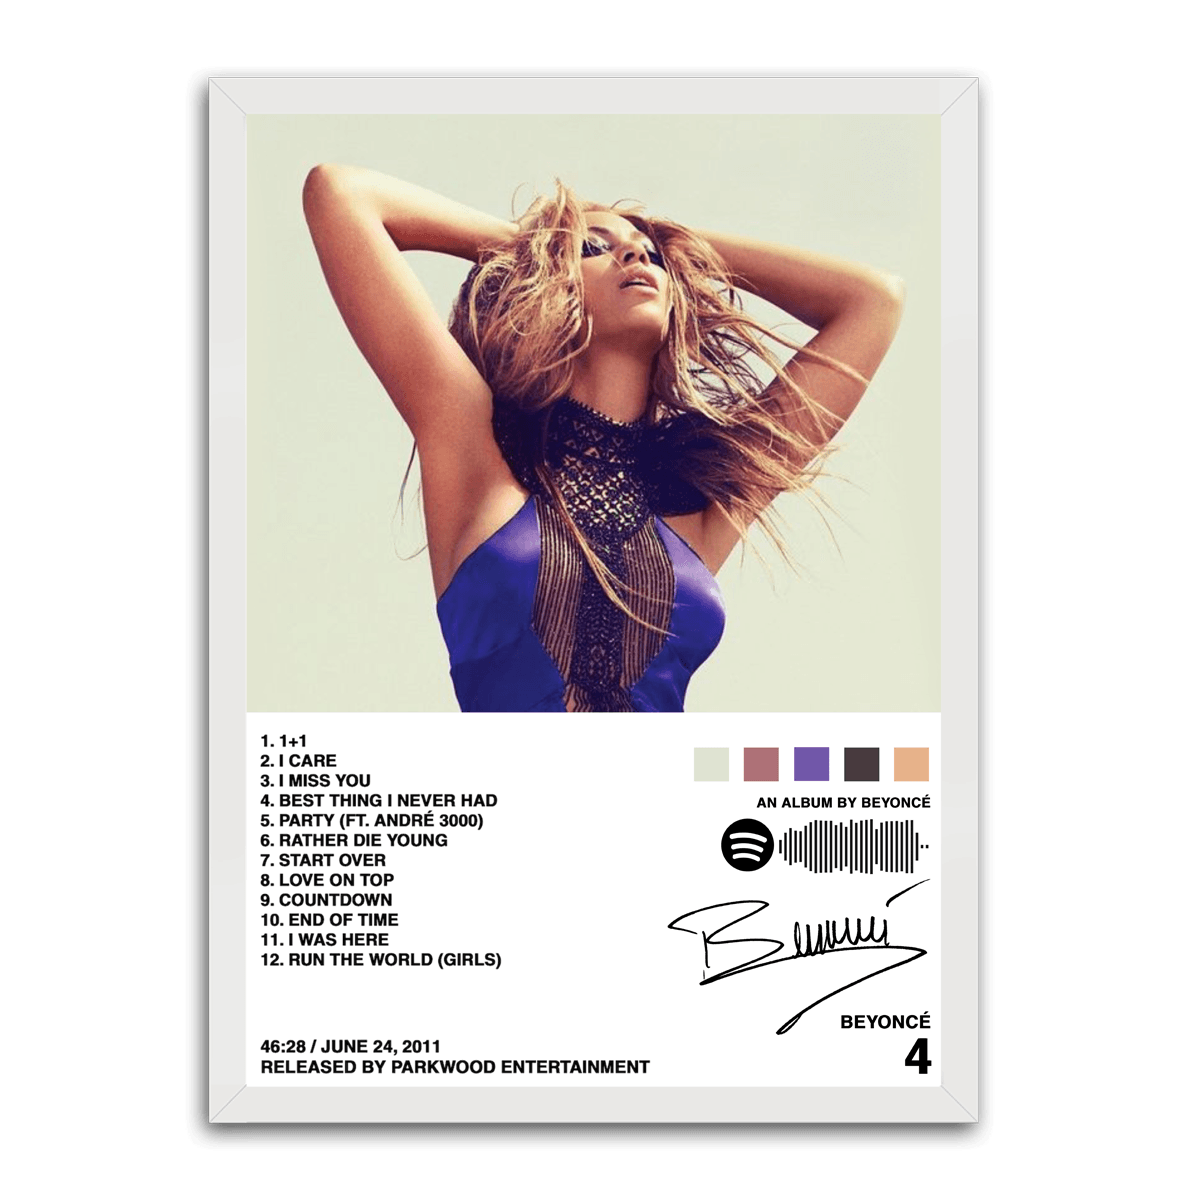 An Album by Beyonce - PixMagic